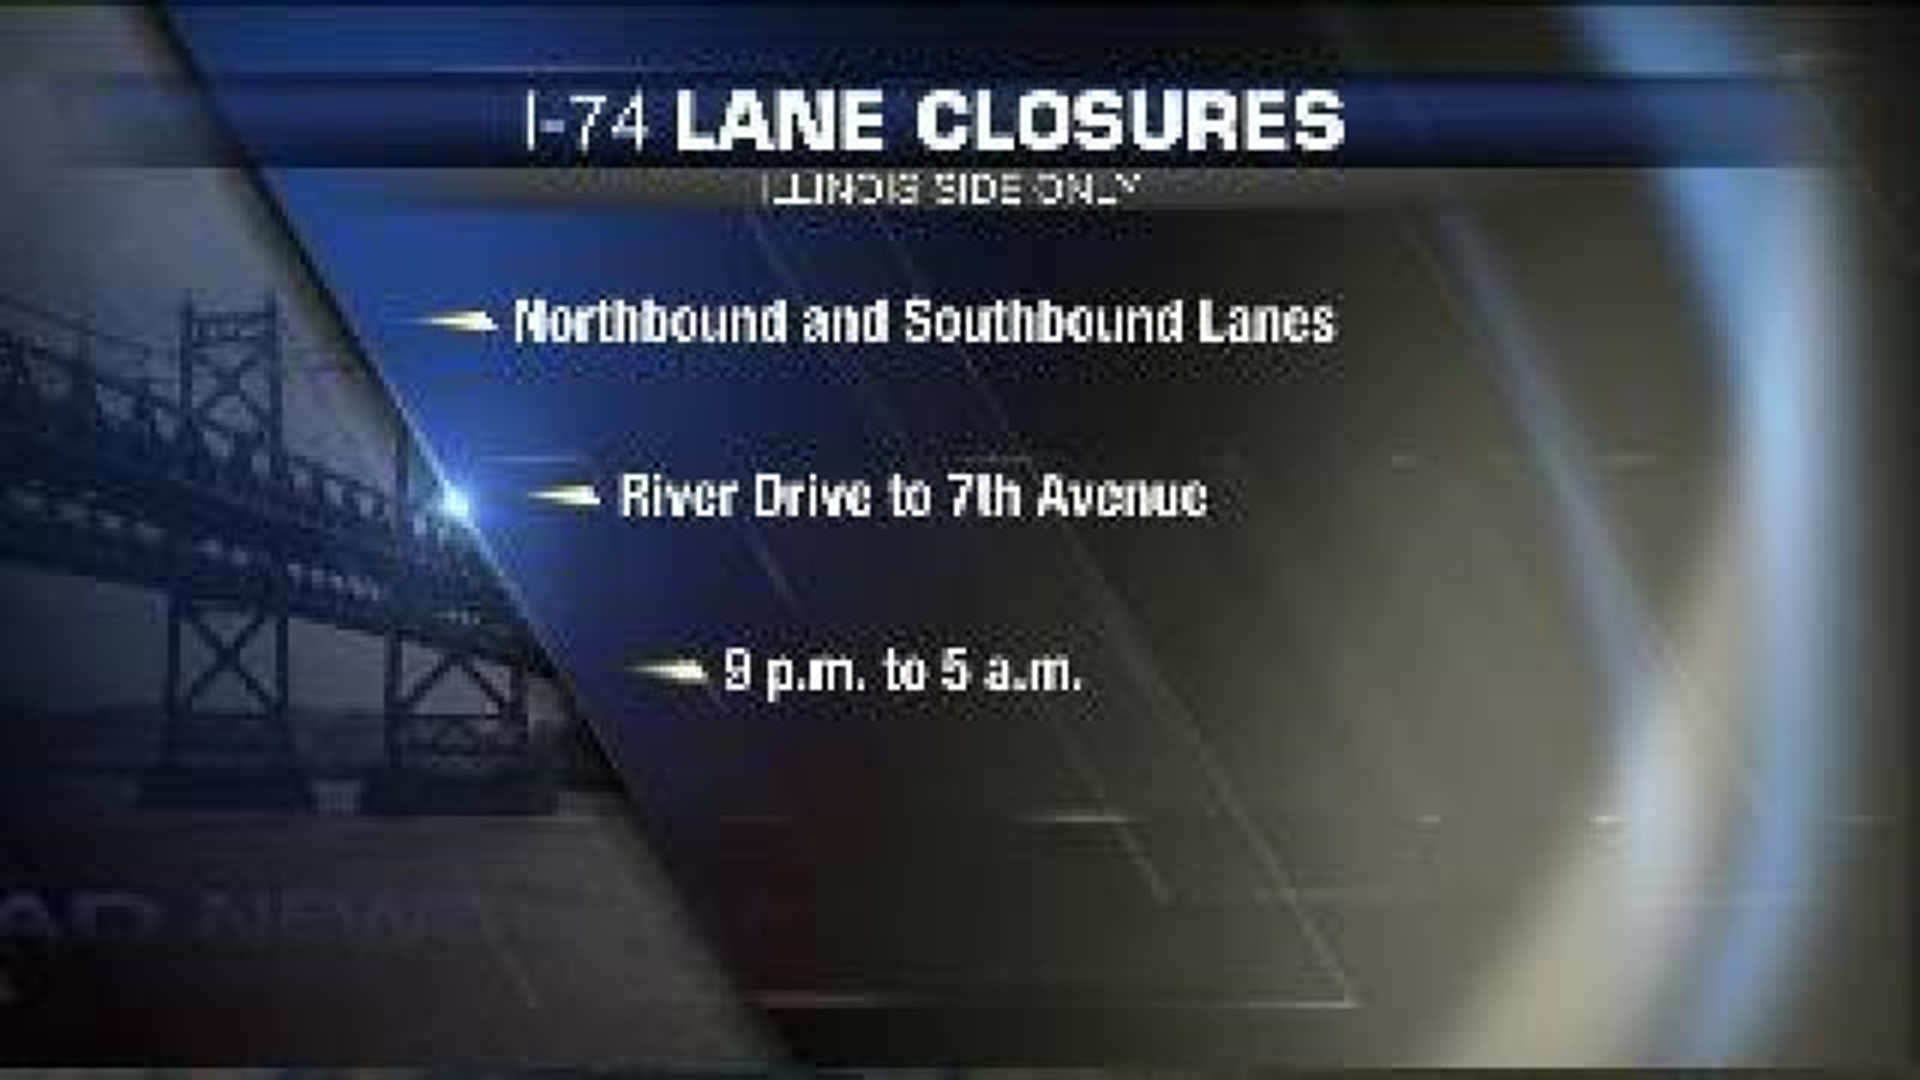 I-74 Lane Closures